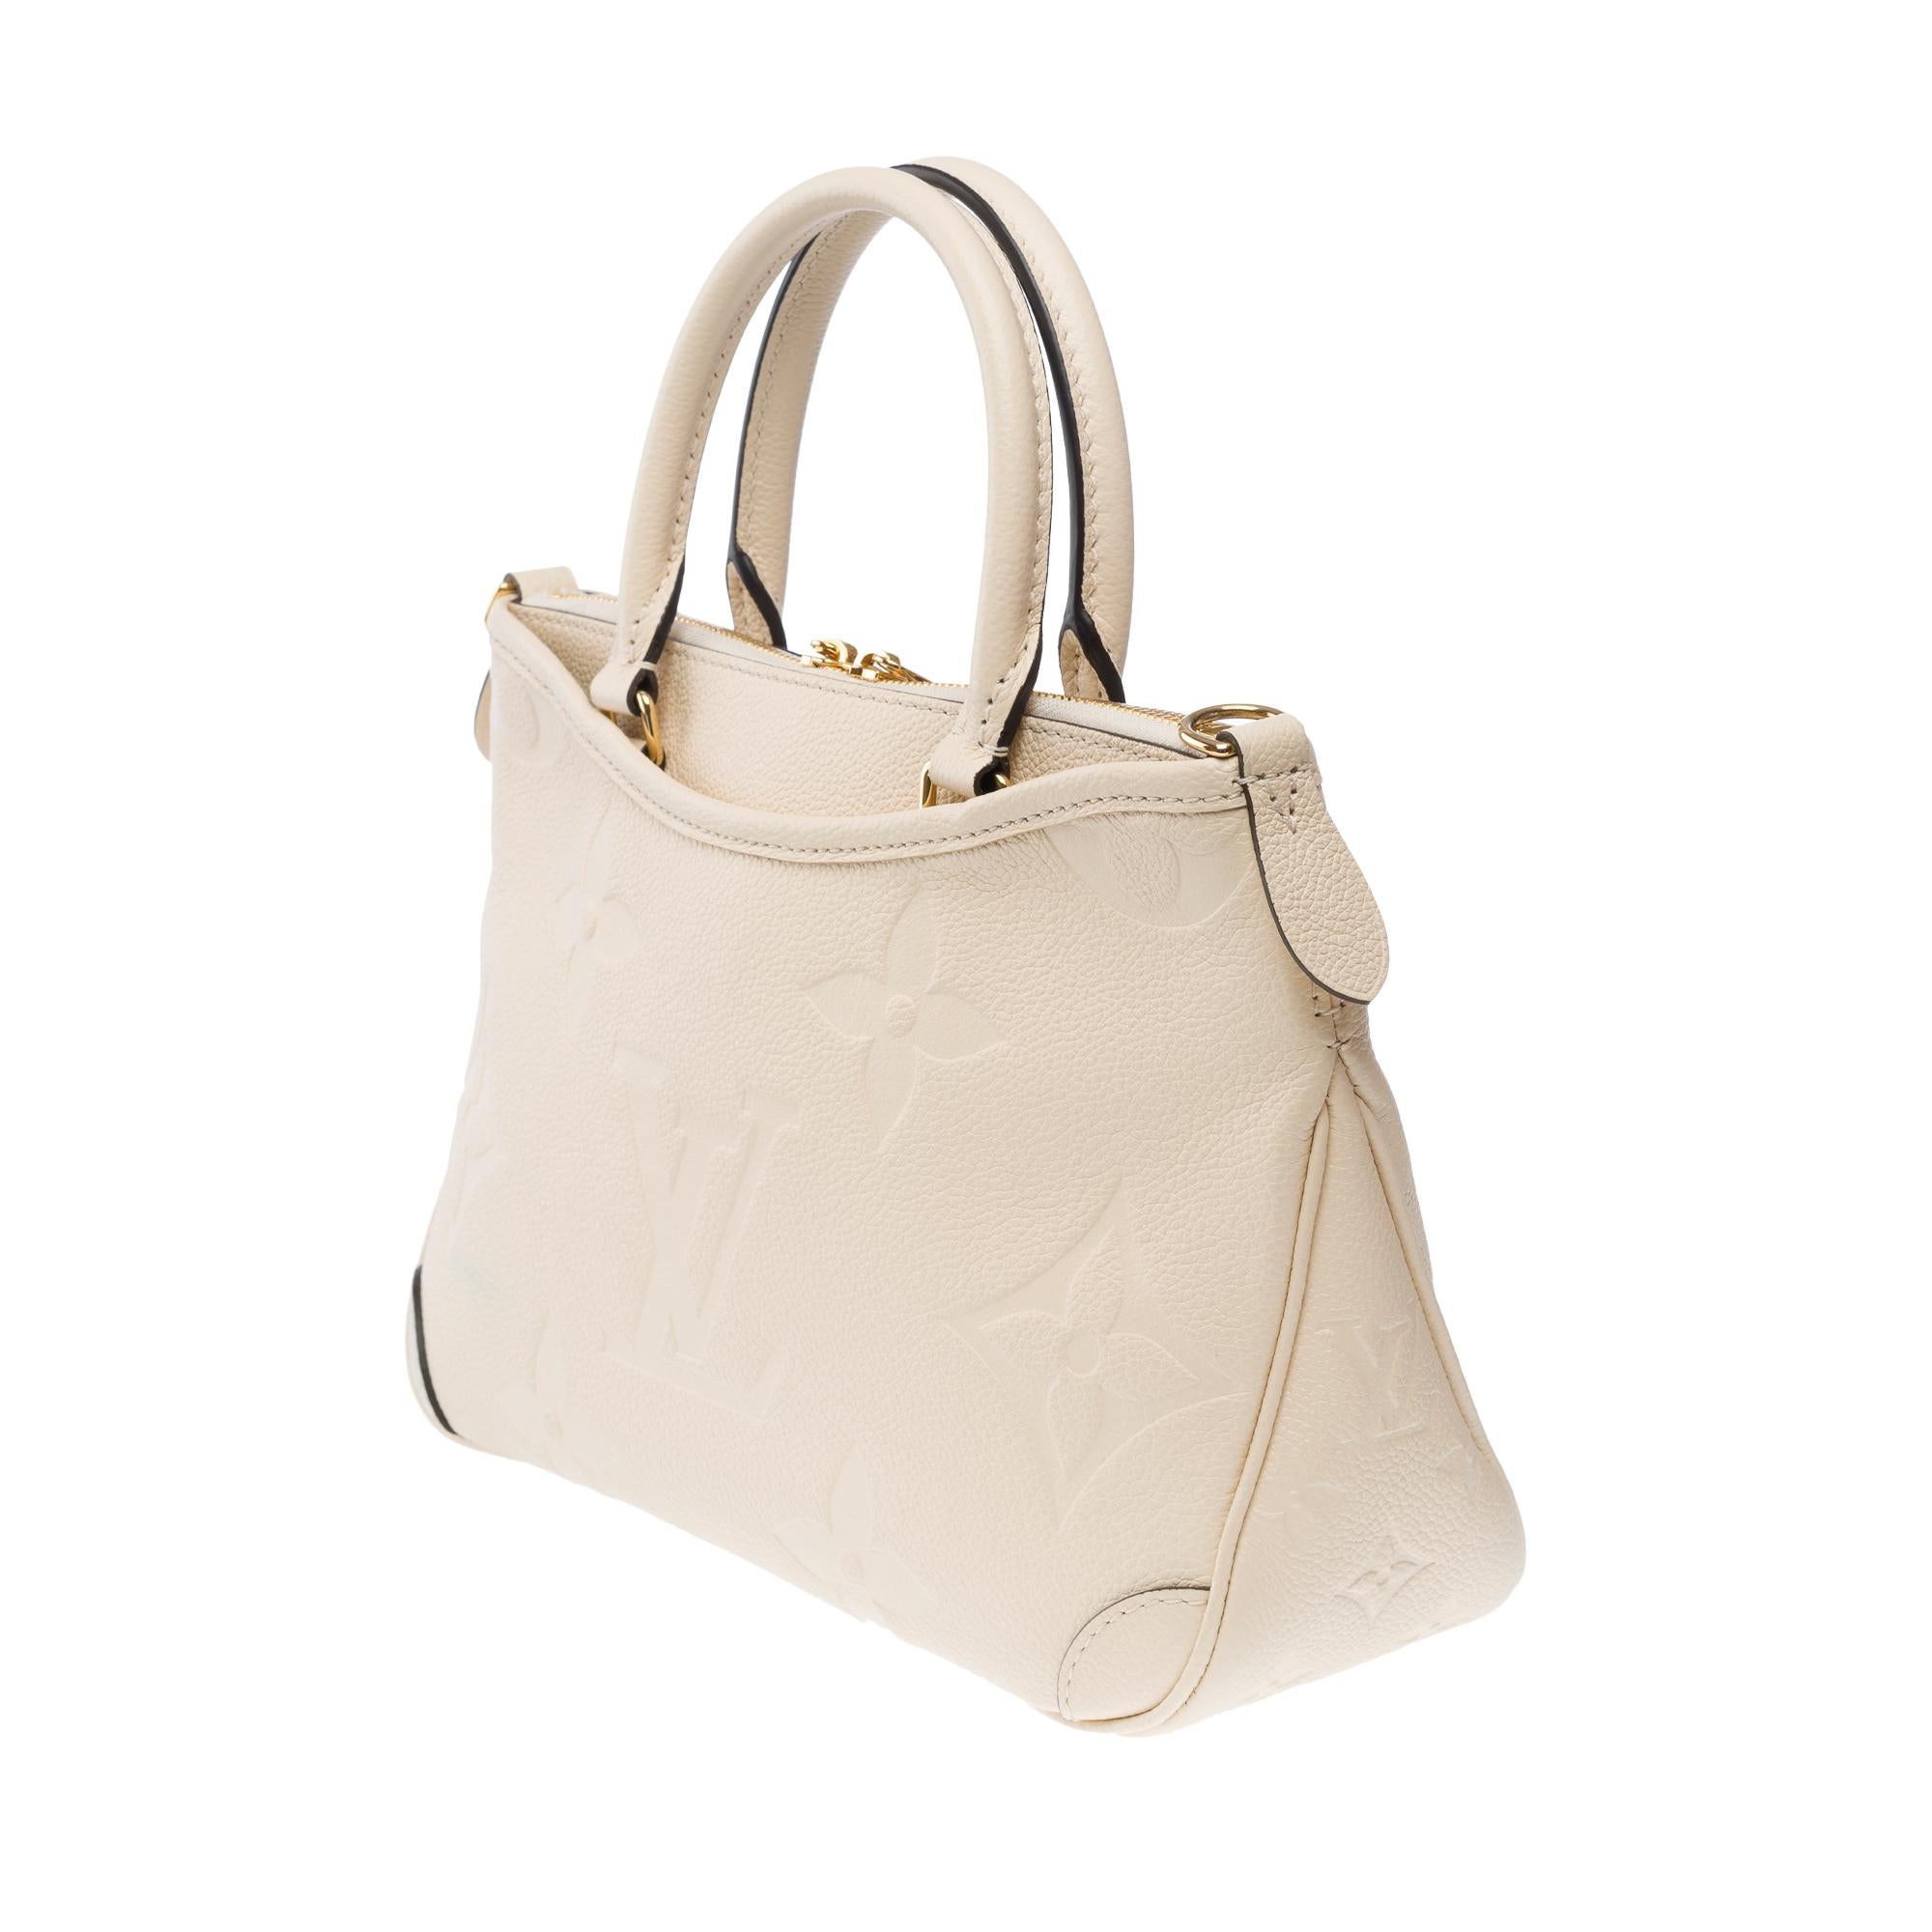 Louis Vuitton Trianon PM handbag strap in Cream White monogram calf leather, GHW For Sale 2